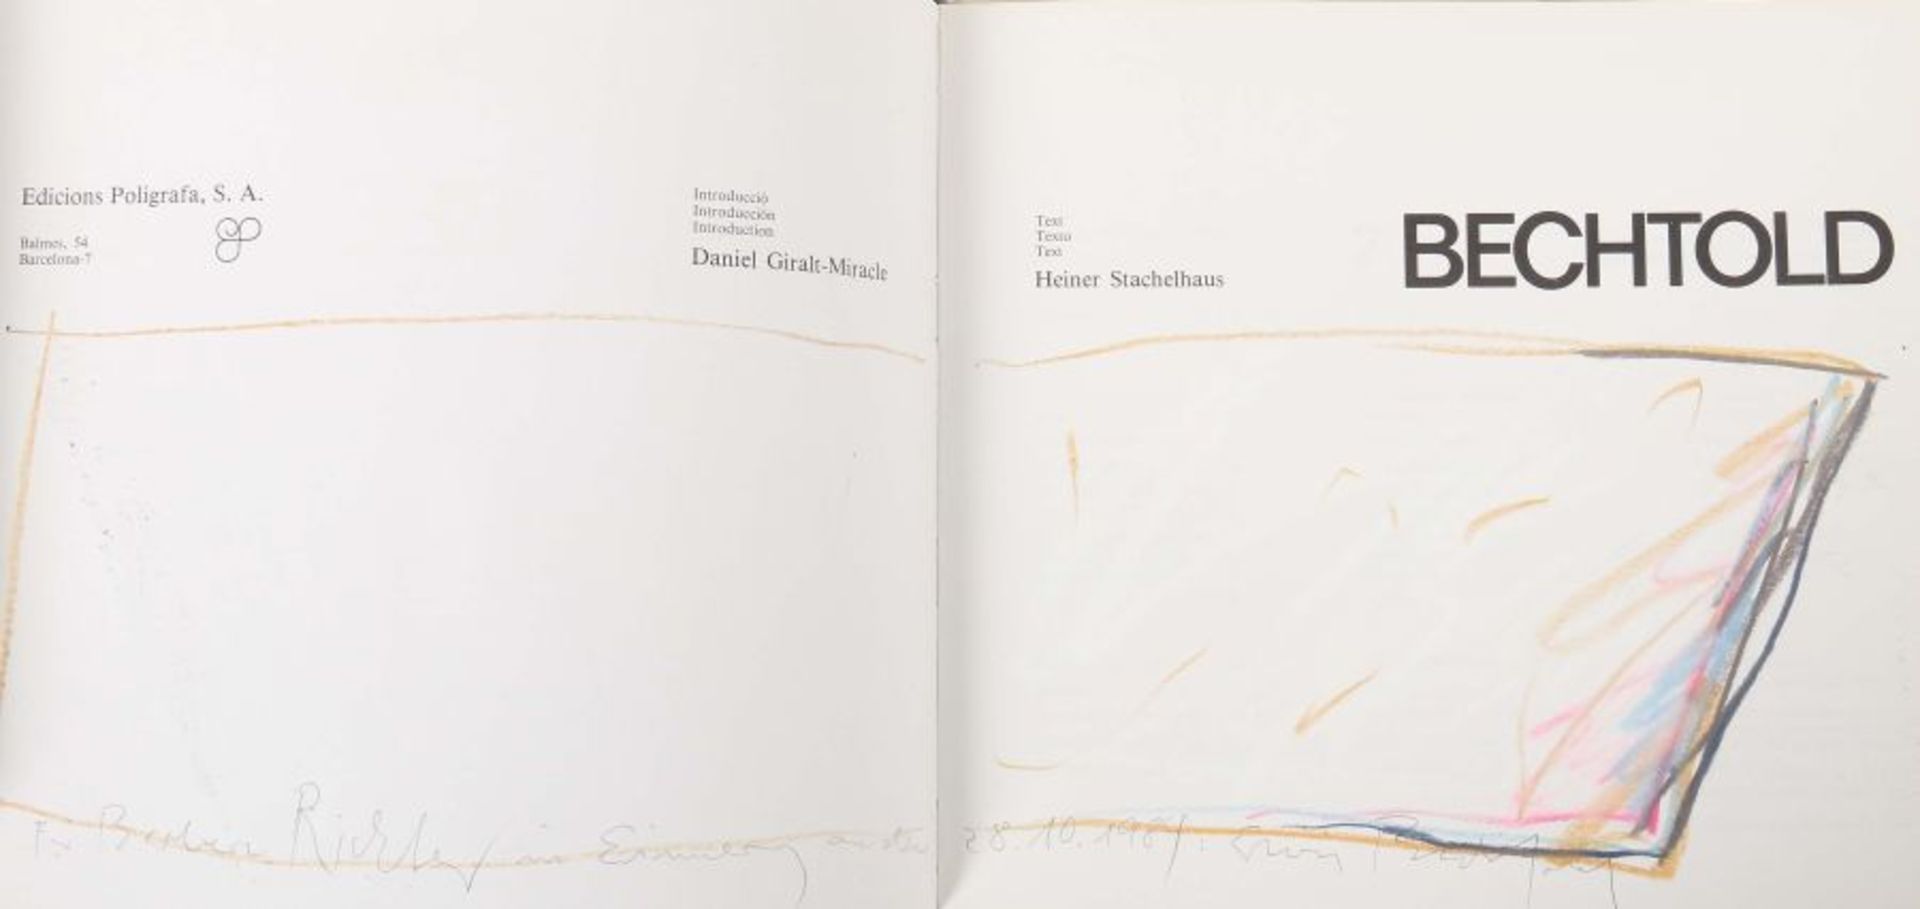 Stachelhaus, Heiner Bechtold, Einführung von Daniel Giralt-Miracle, Barcelona, Edicions Polígrafa, - Bild 2 aus 2